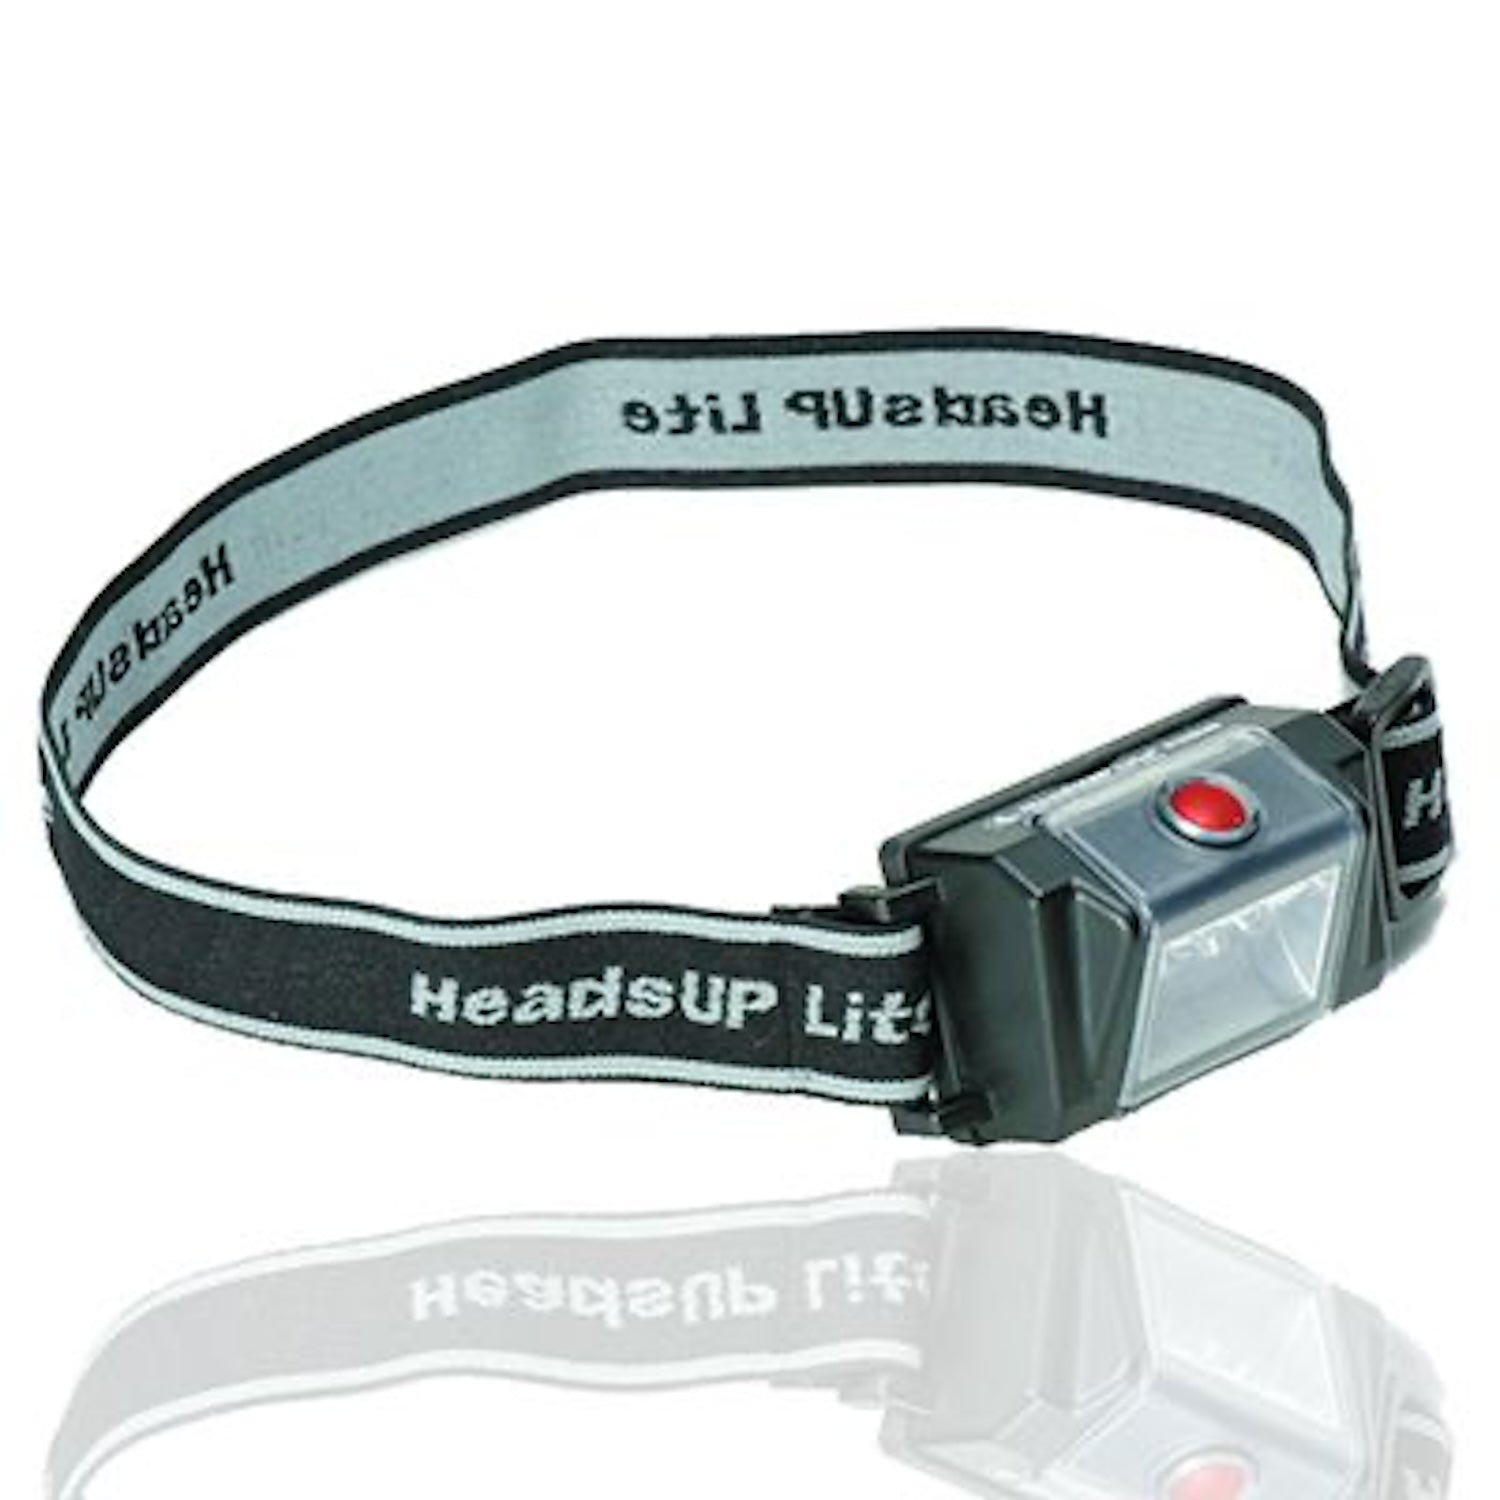 Peli Headsup Lite 2610 LED